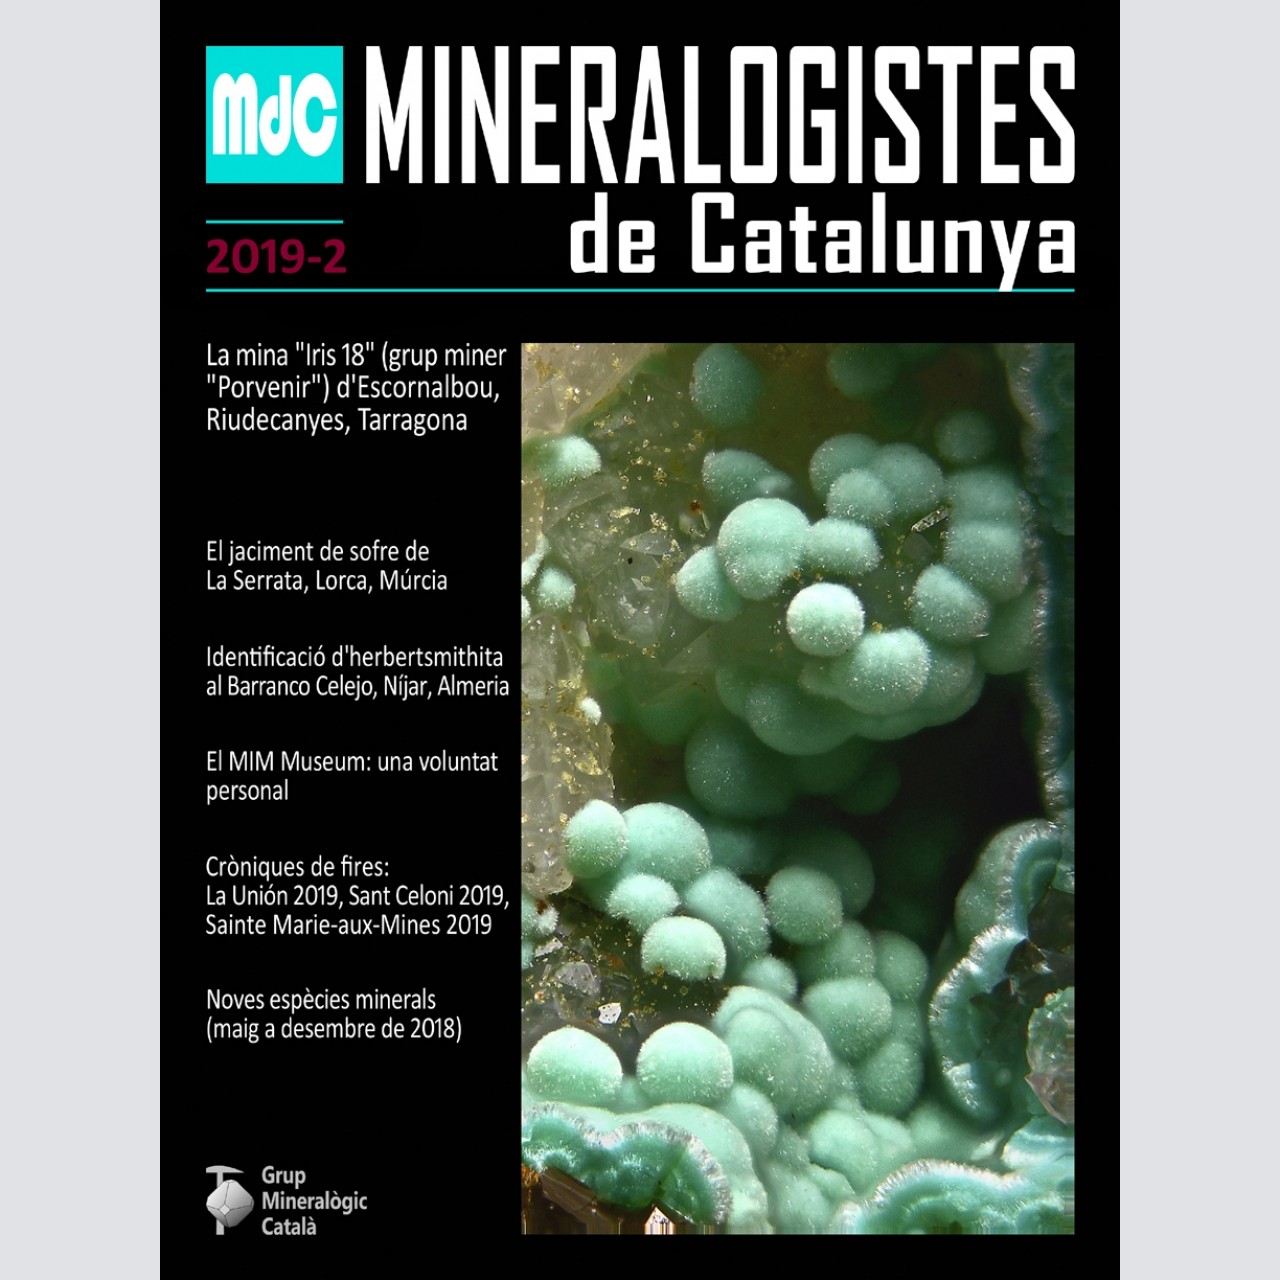 <em>Mineralogistes de Catalunya</em> (2019-2)